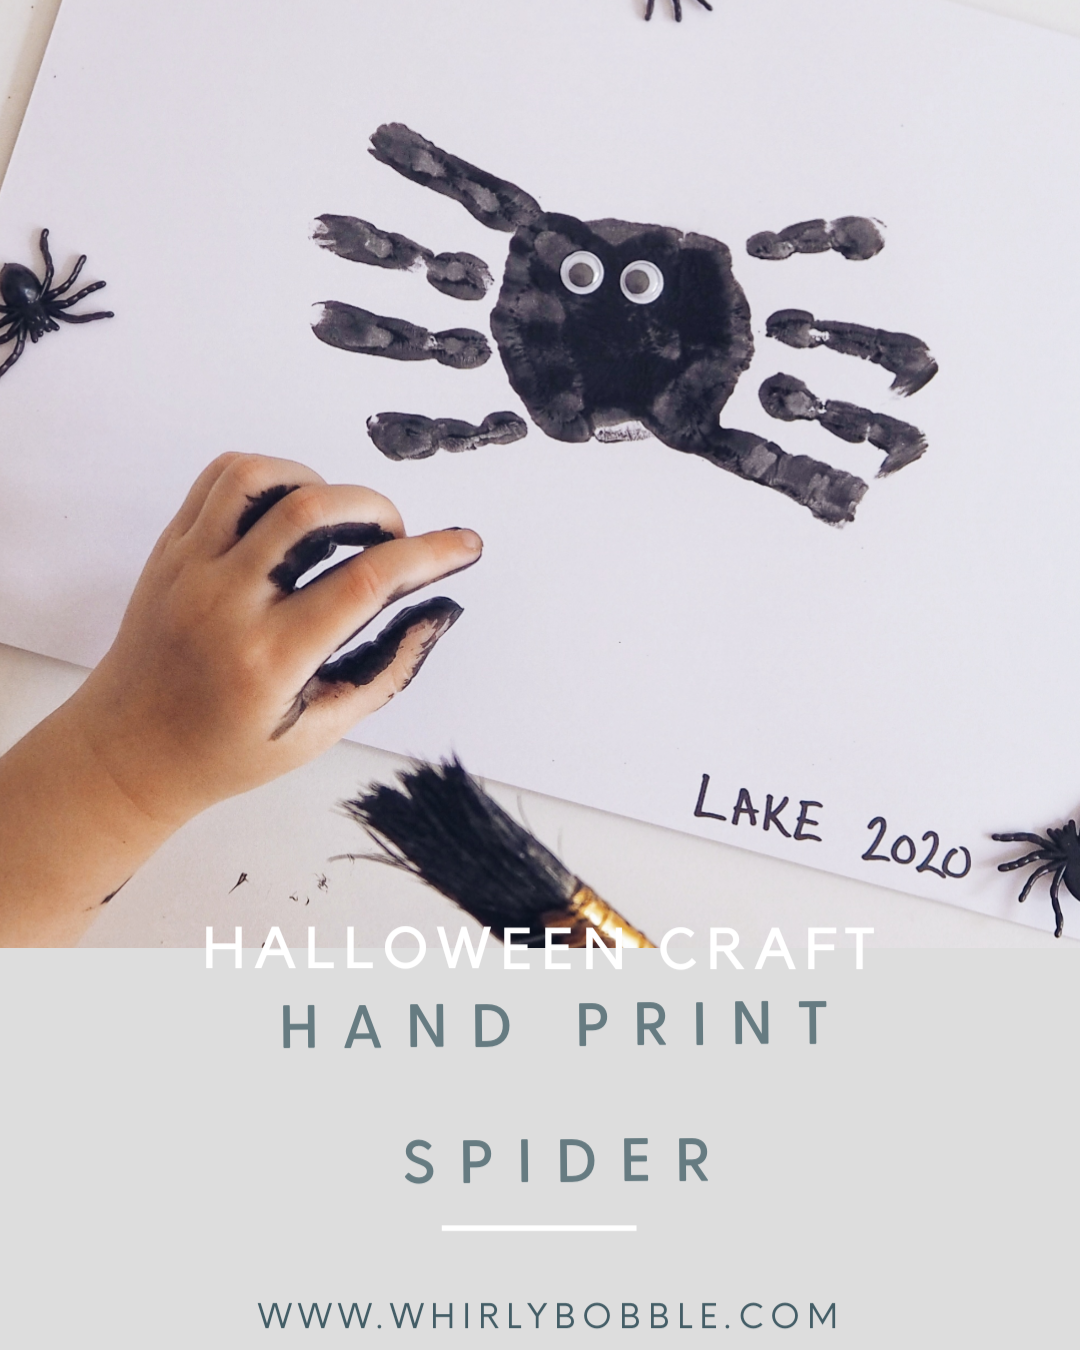 Halloween handprint spider craft